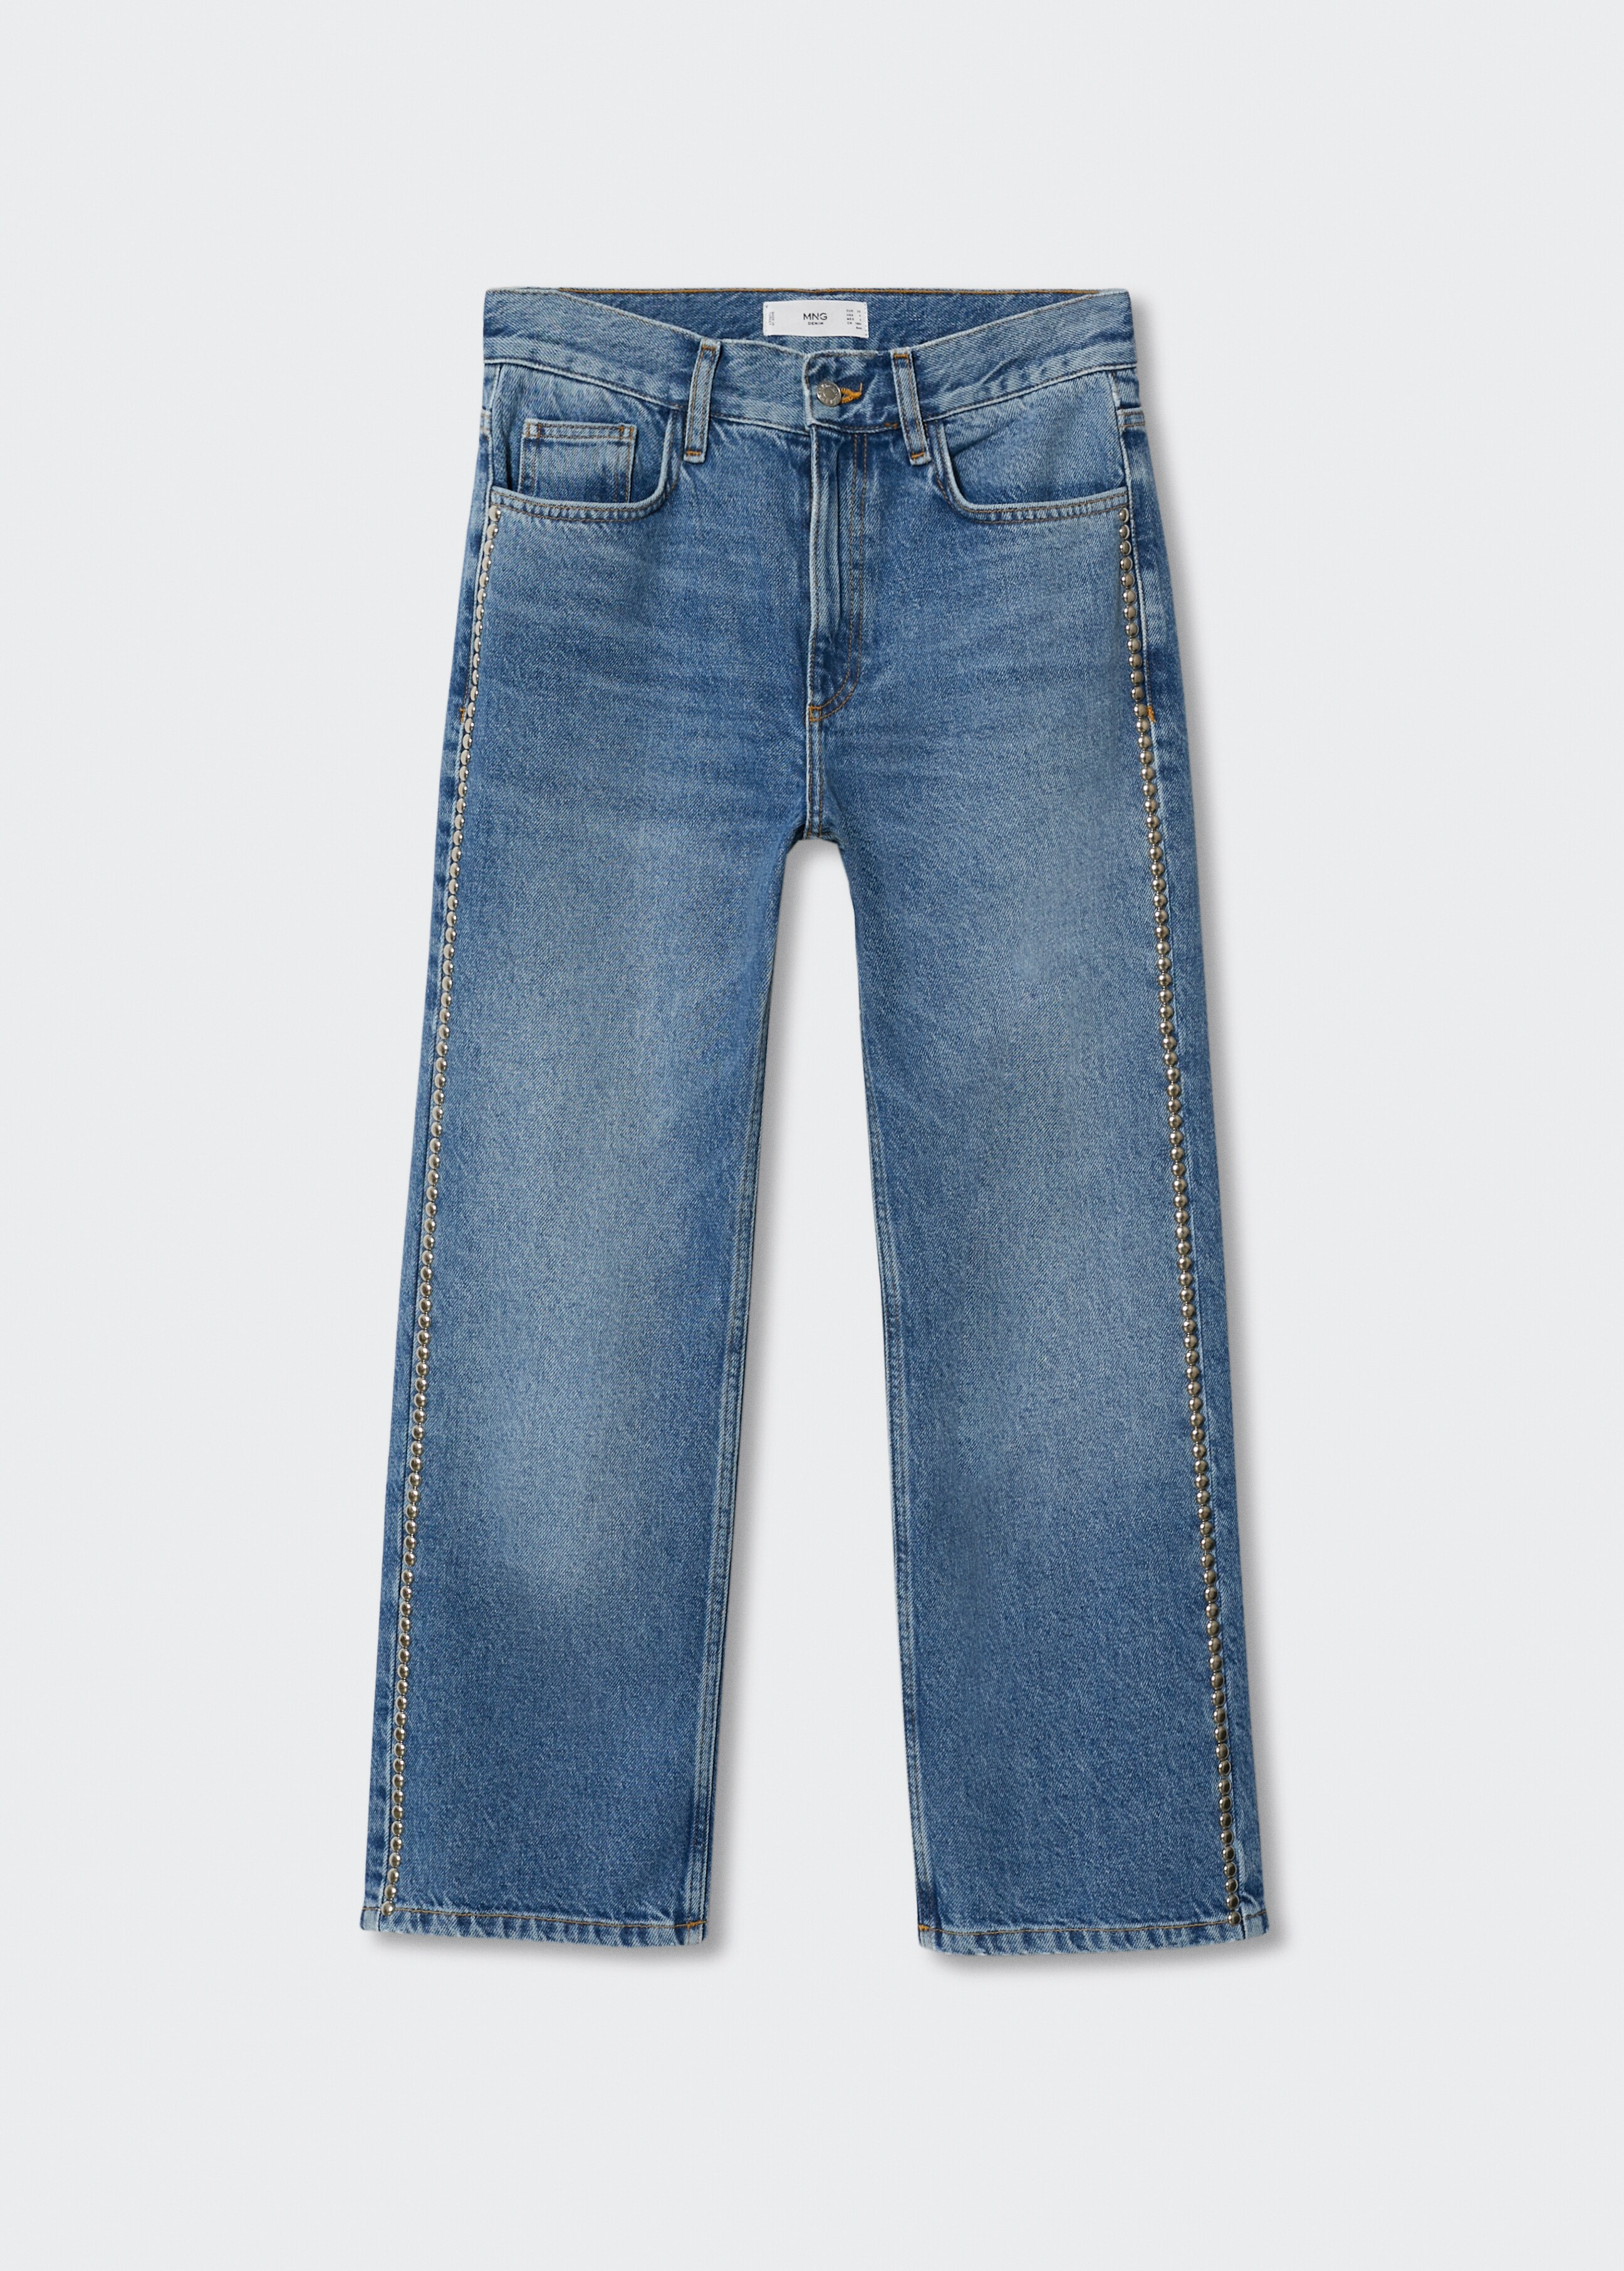 Jeans rectos tachuelas - Artículo sin modelo